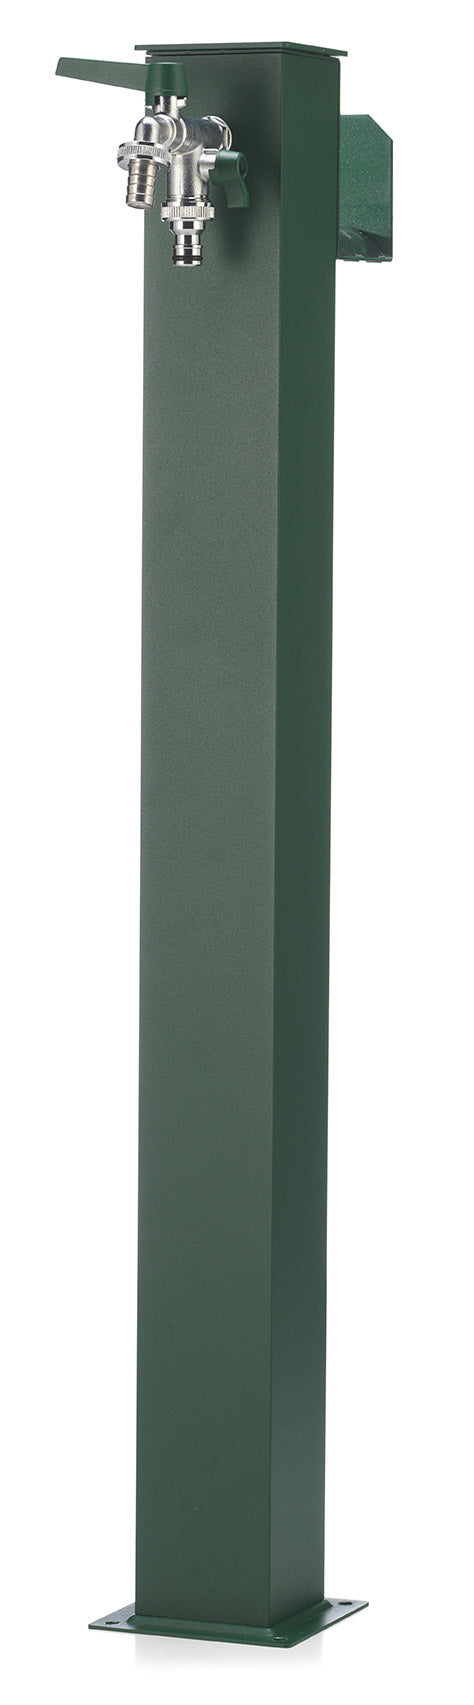 prezzo Fontana da Giardino con Doppio Rubinetto Belfer 42/QRR Verde